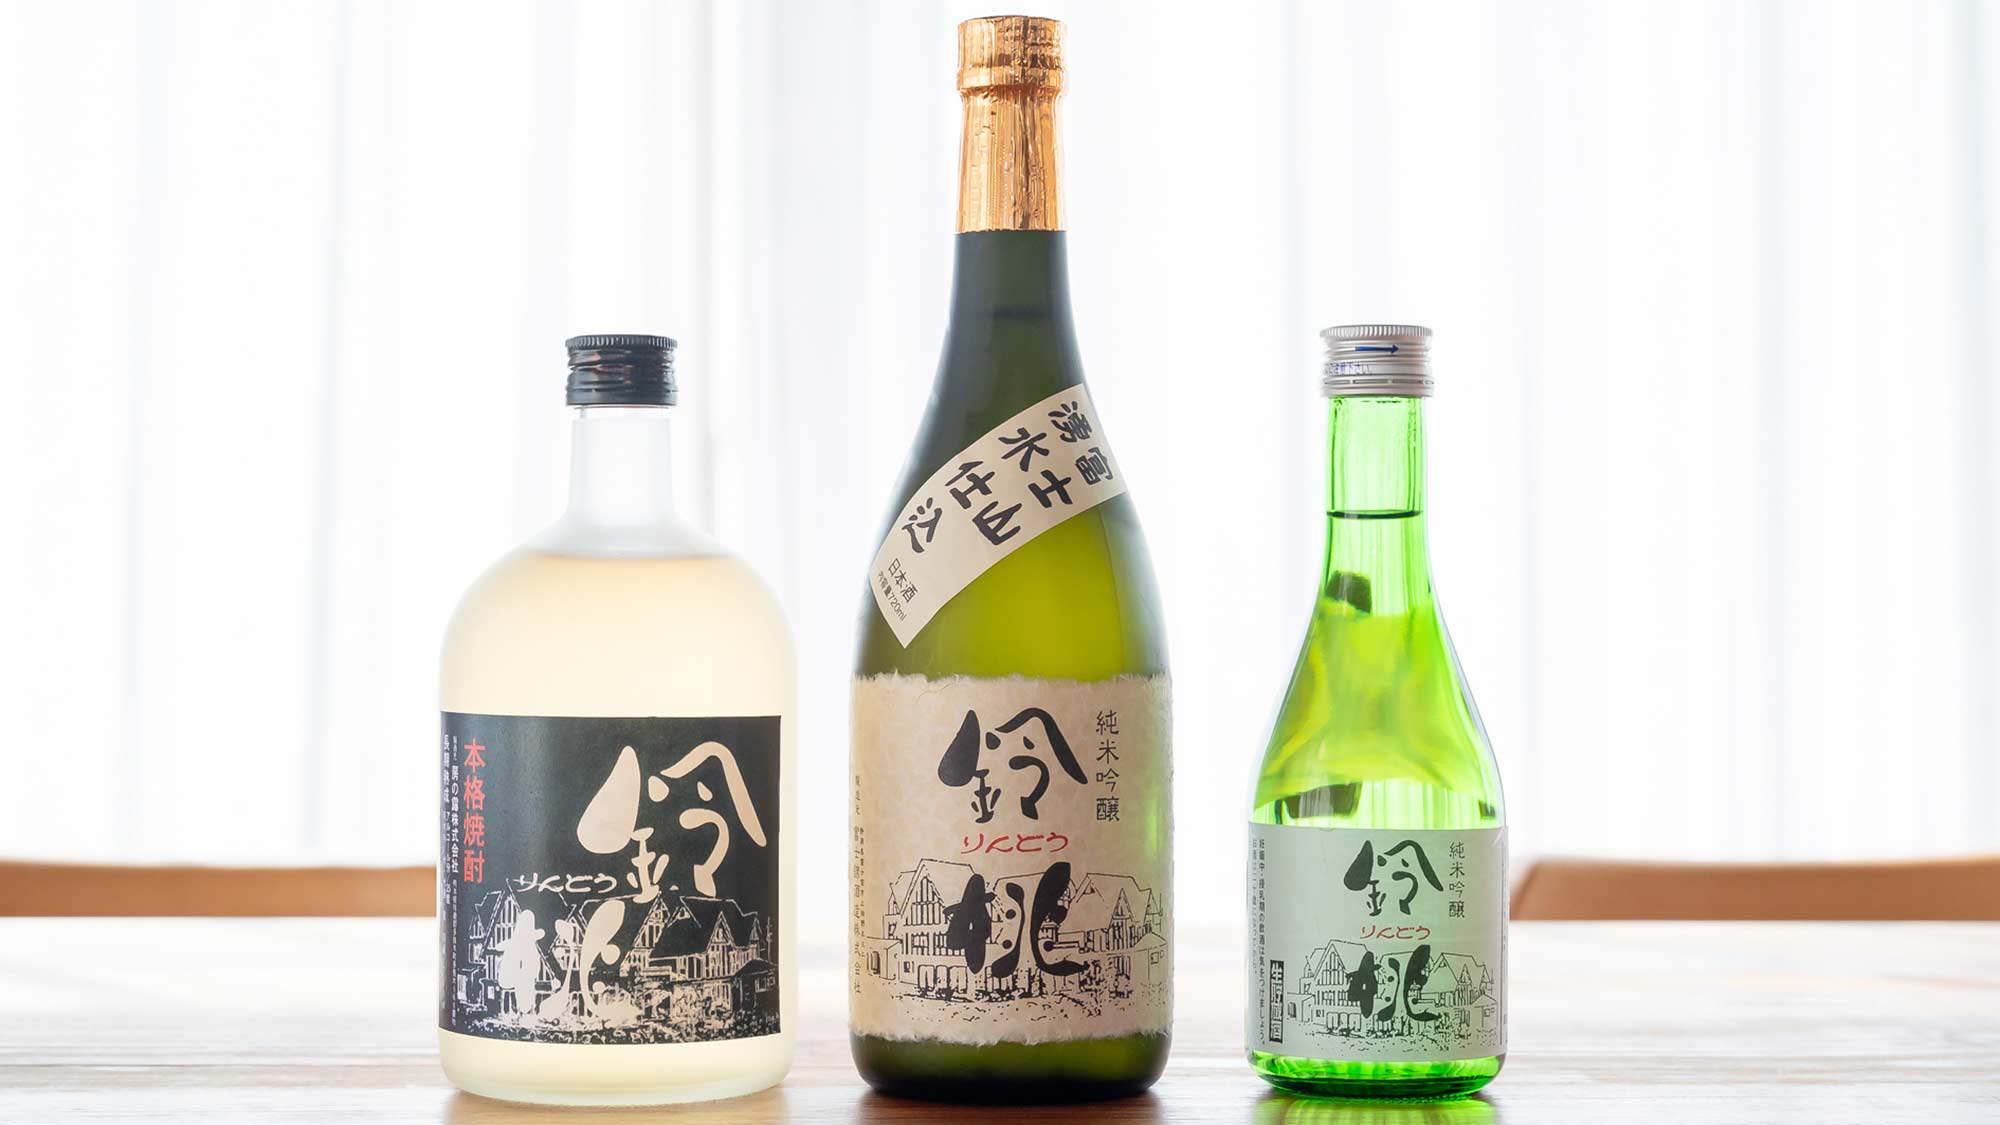 ・【鈴桃オリジナル酒類】焼酎や純米吟醸酒などオリジナルのお酒をご用意しております